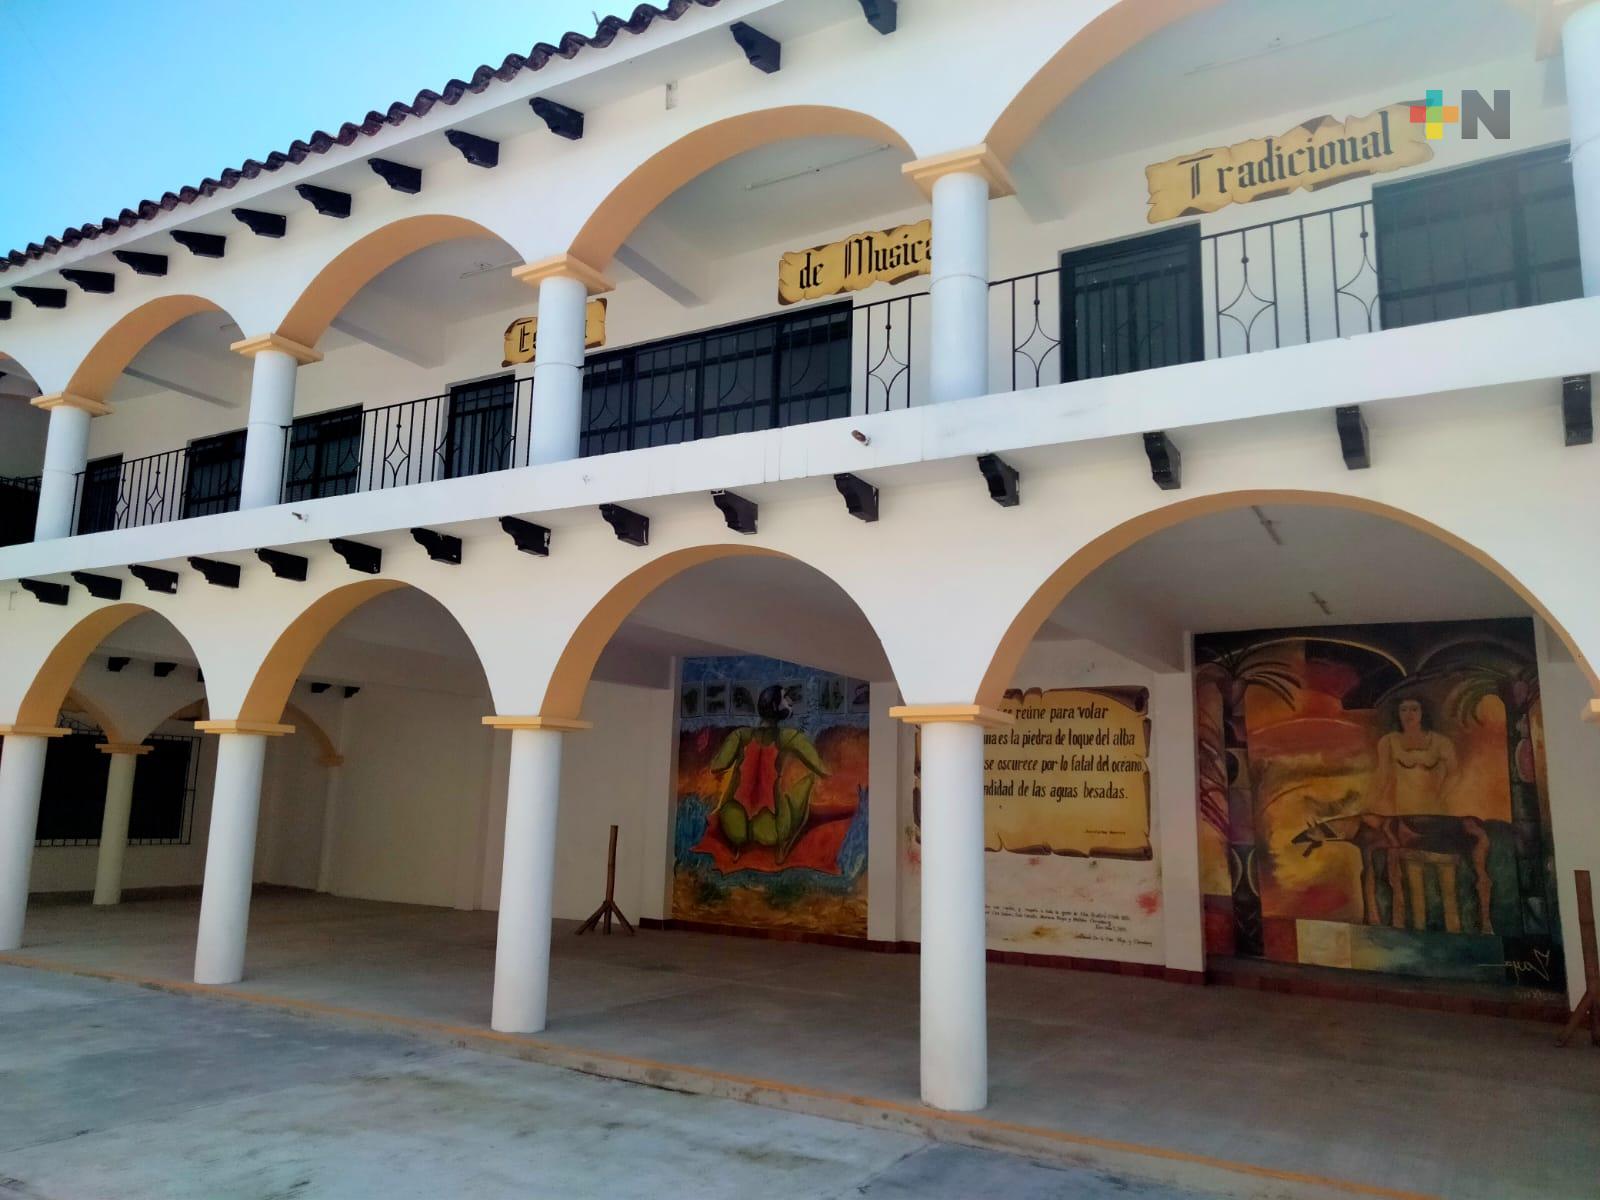 Talleres de música tradicional, pintura y otras actividades culturales ofrecen en Xico